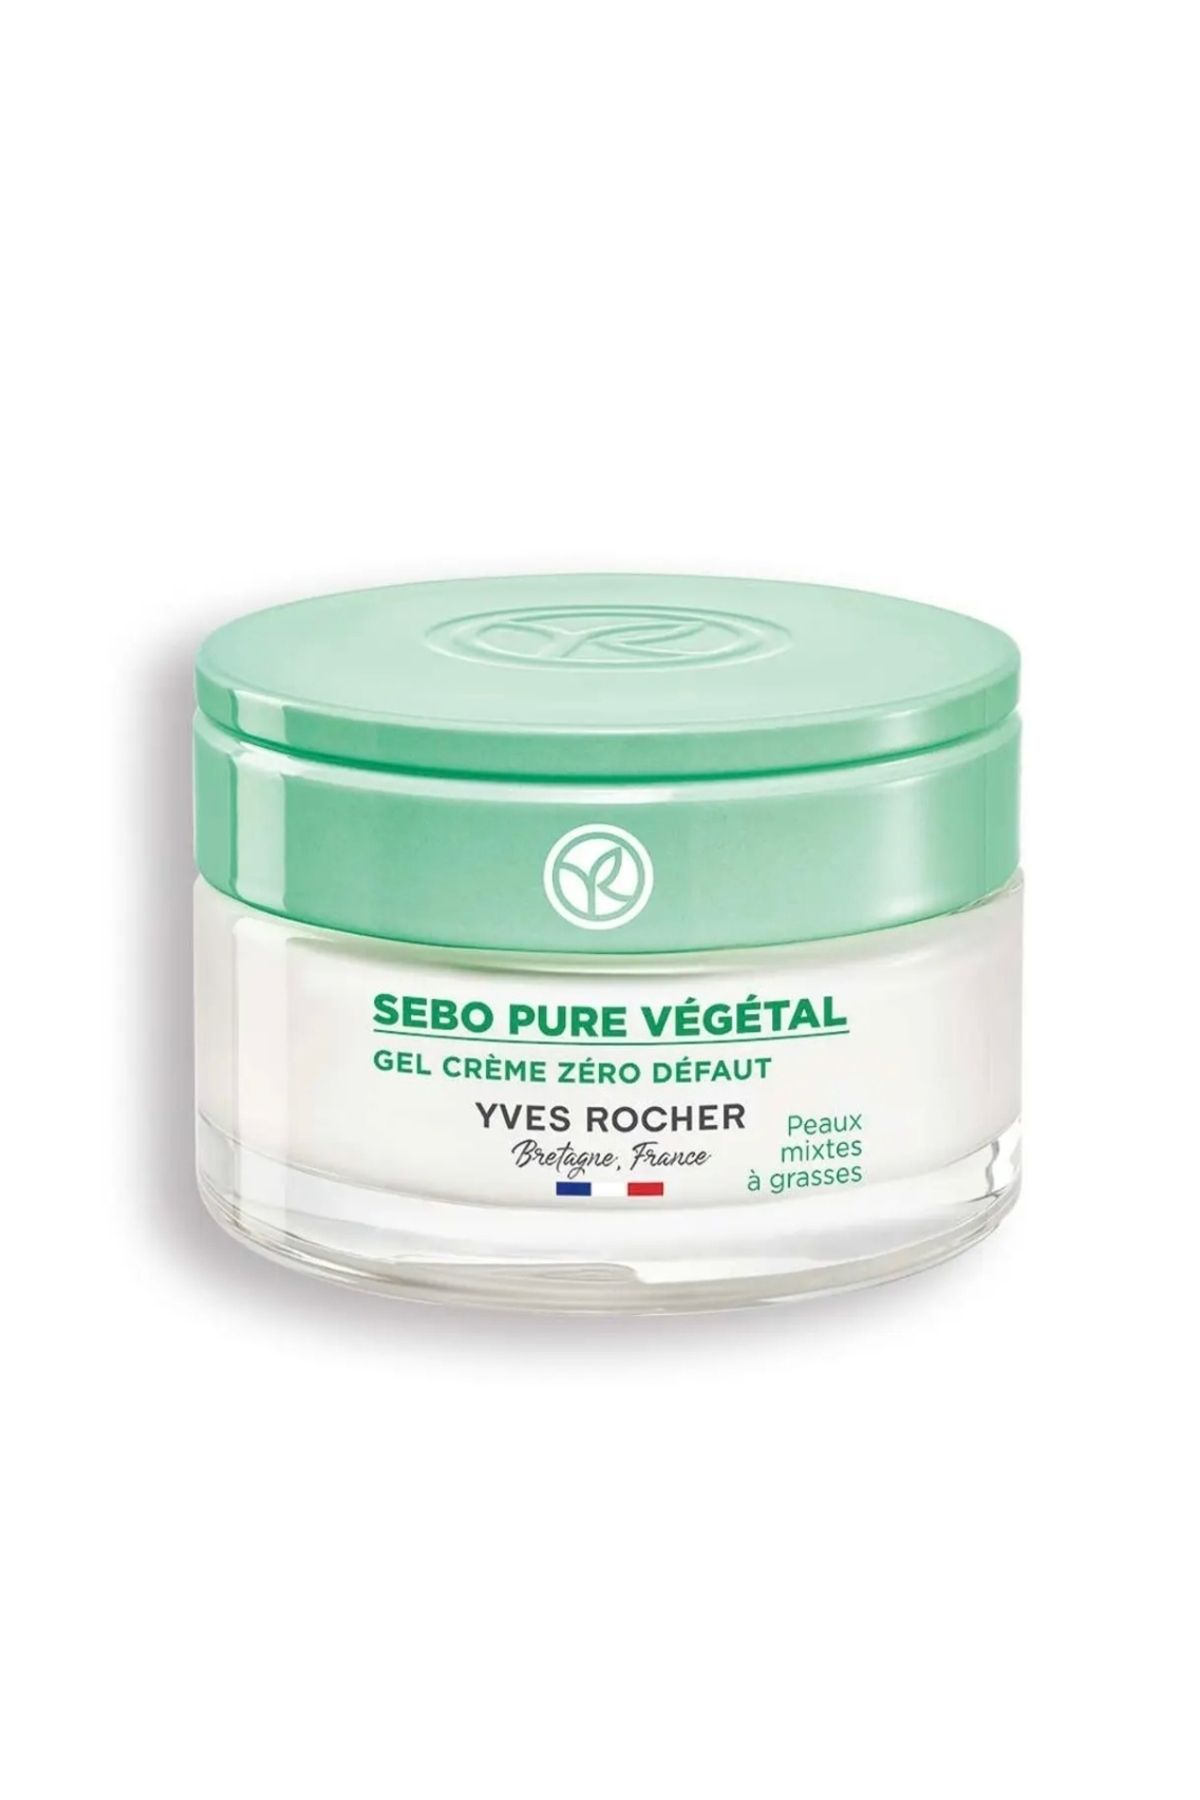 Yves Rocher Karma ve Yağlı Cilt Dengeleyici ve Matlaştırıcı Çinko Salislik Asit Jel Krem Sebo Pure Vegetal 50 ml